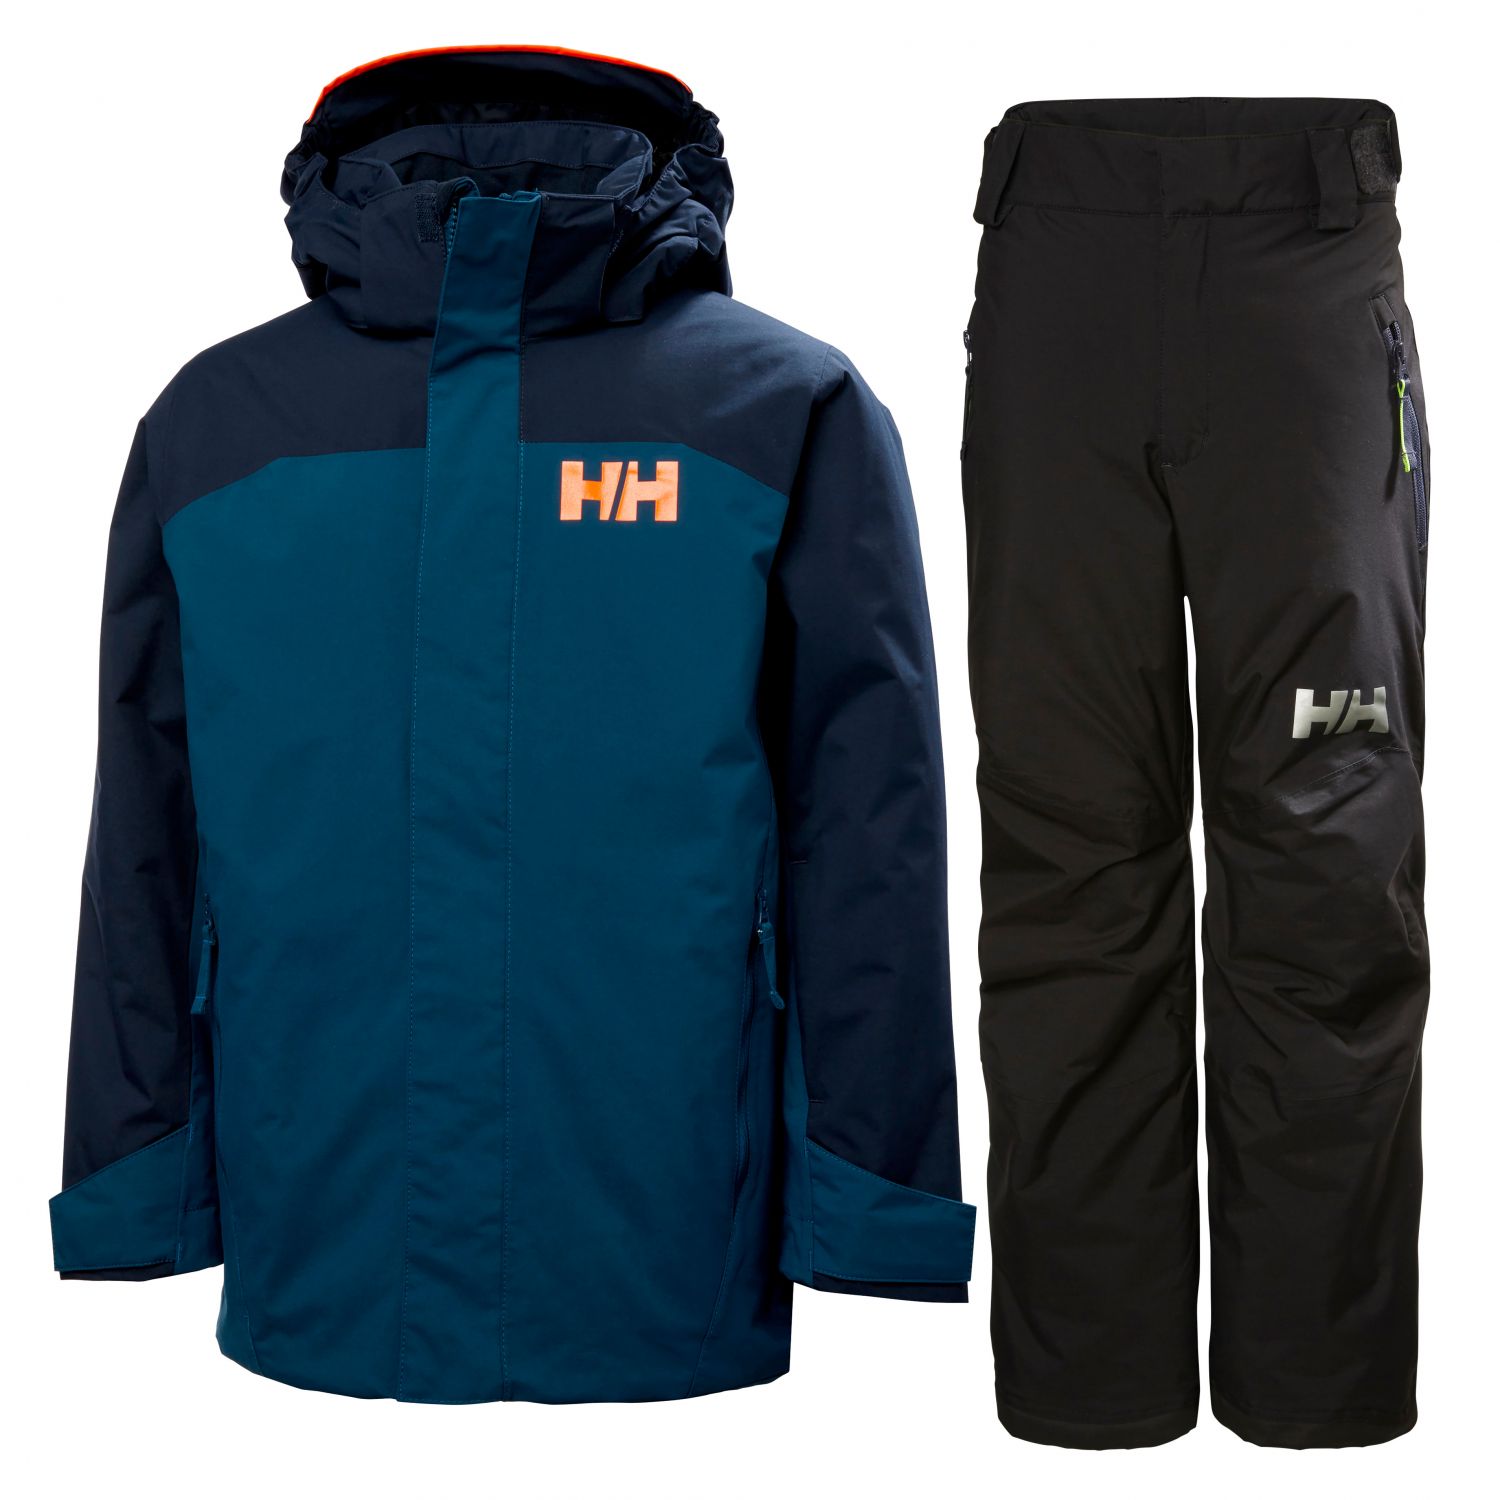 Helly Hansen Level skiset, junior, dark blue